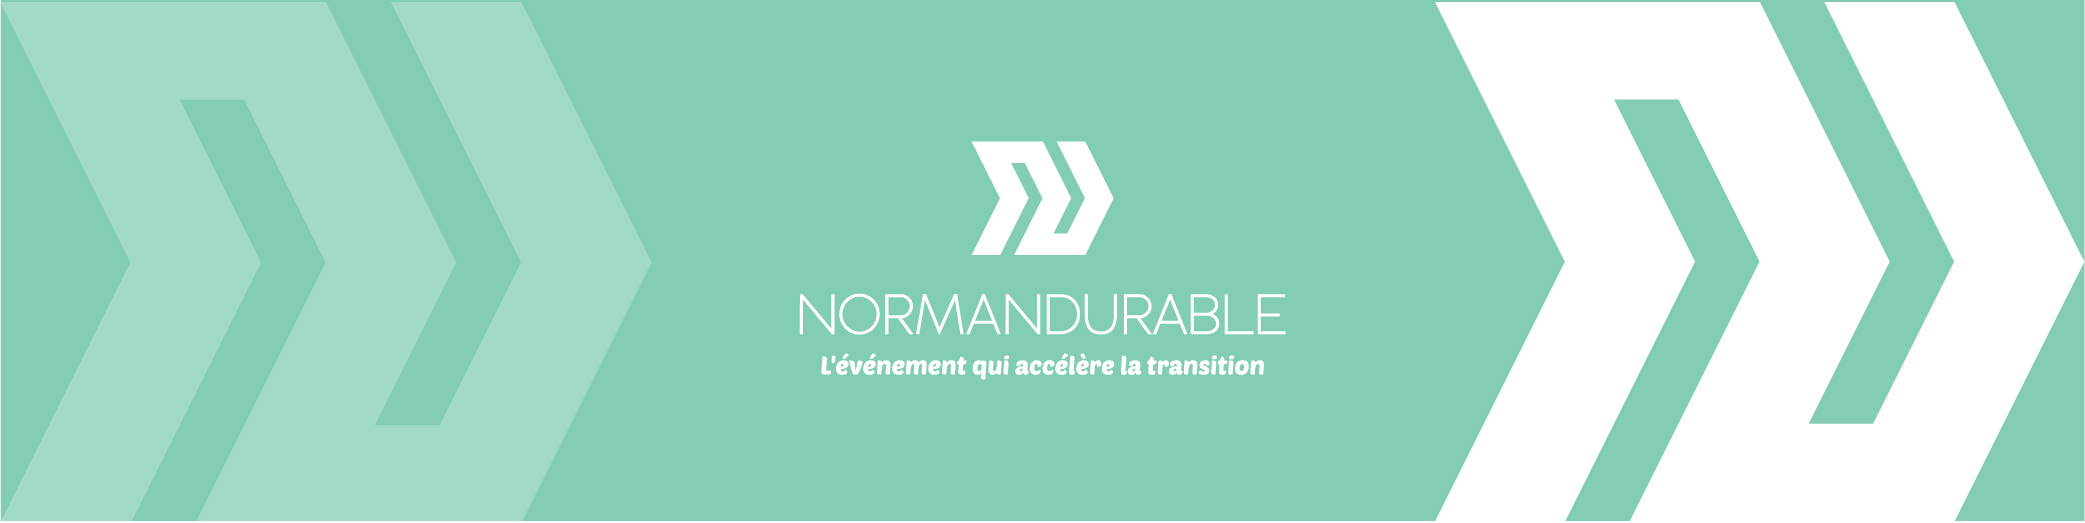 Le Normandurable, salon des métiers de la transition écologique